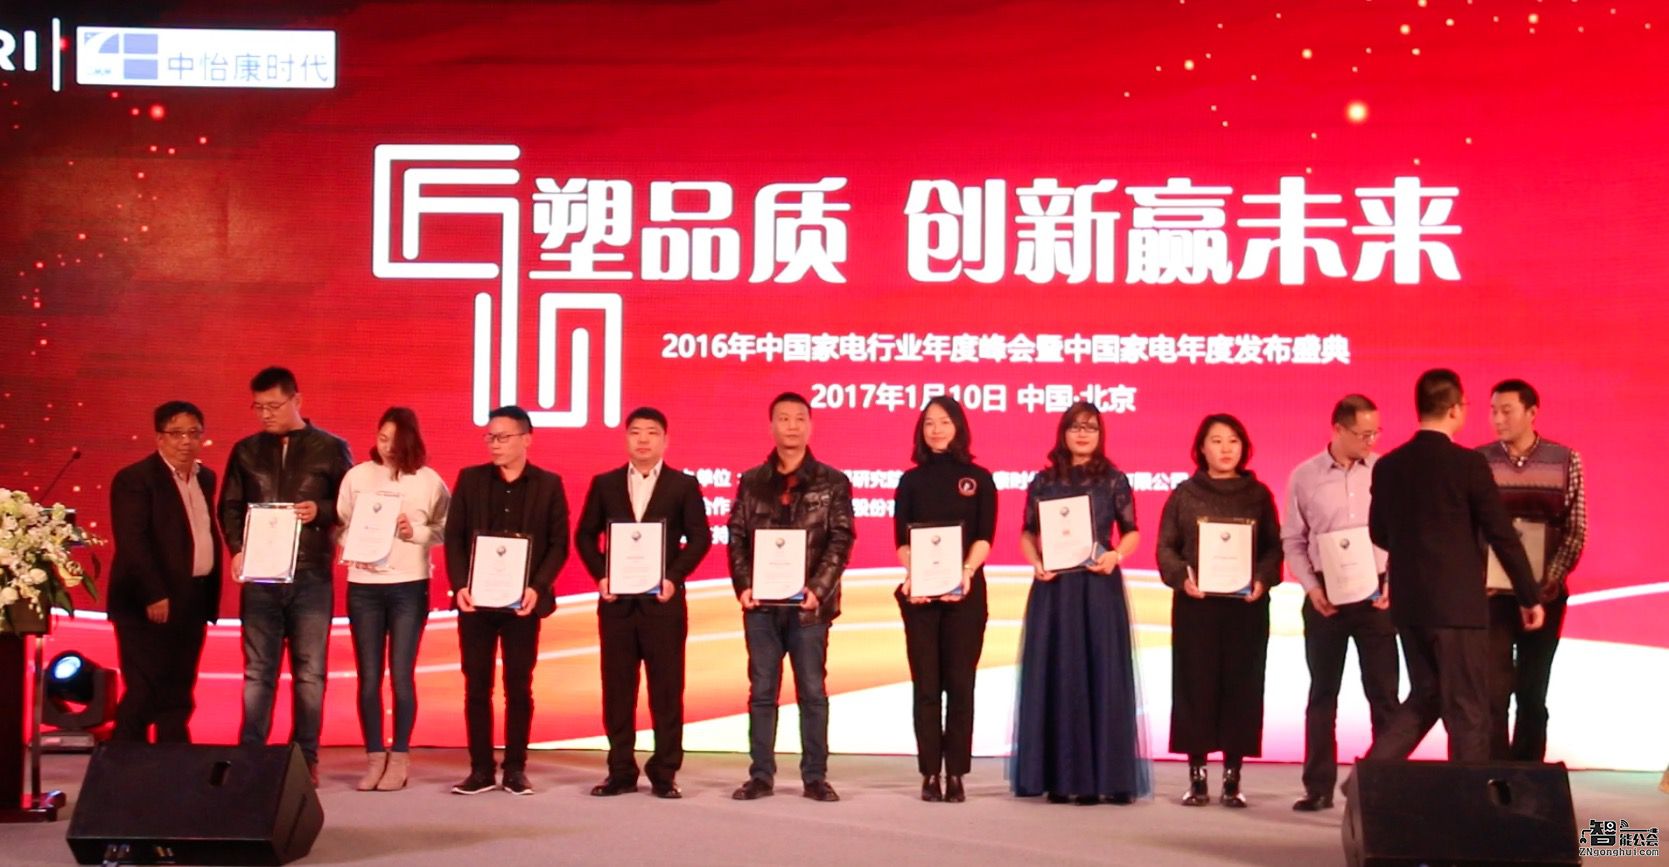 2016年中国家电行业年度峰会暨发布盛典成功召开 智能公会